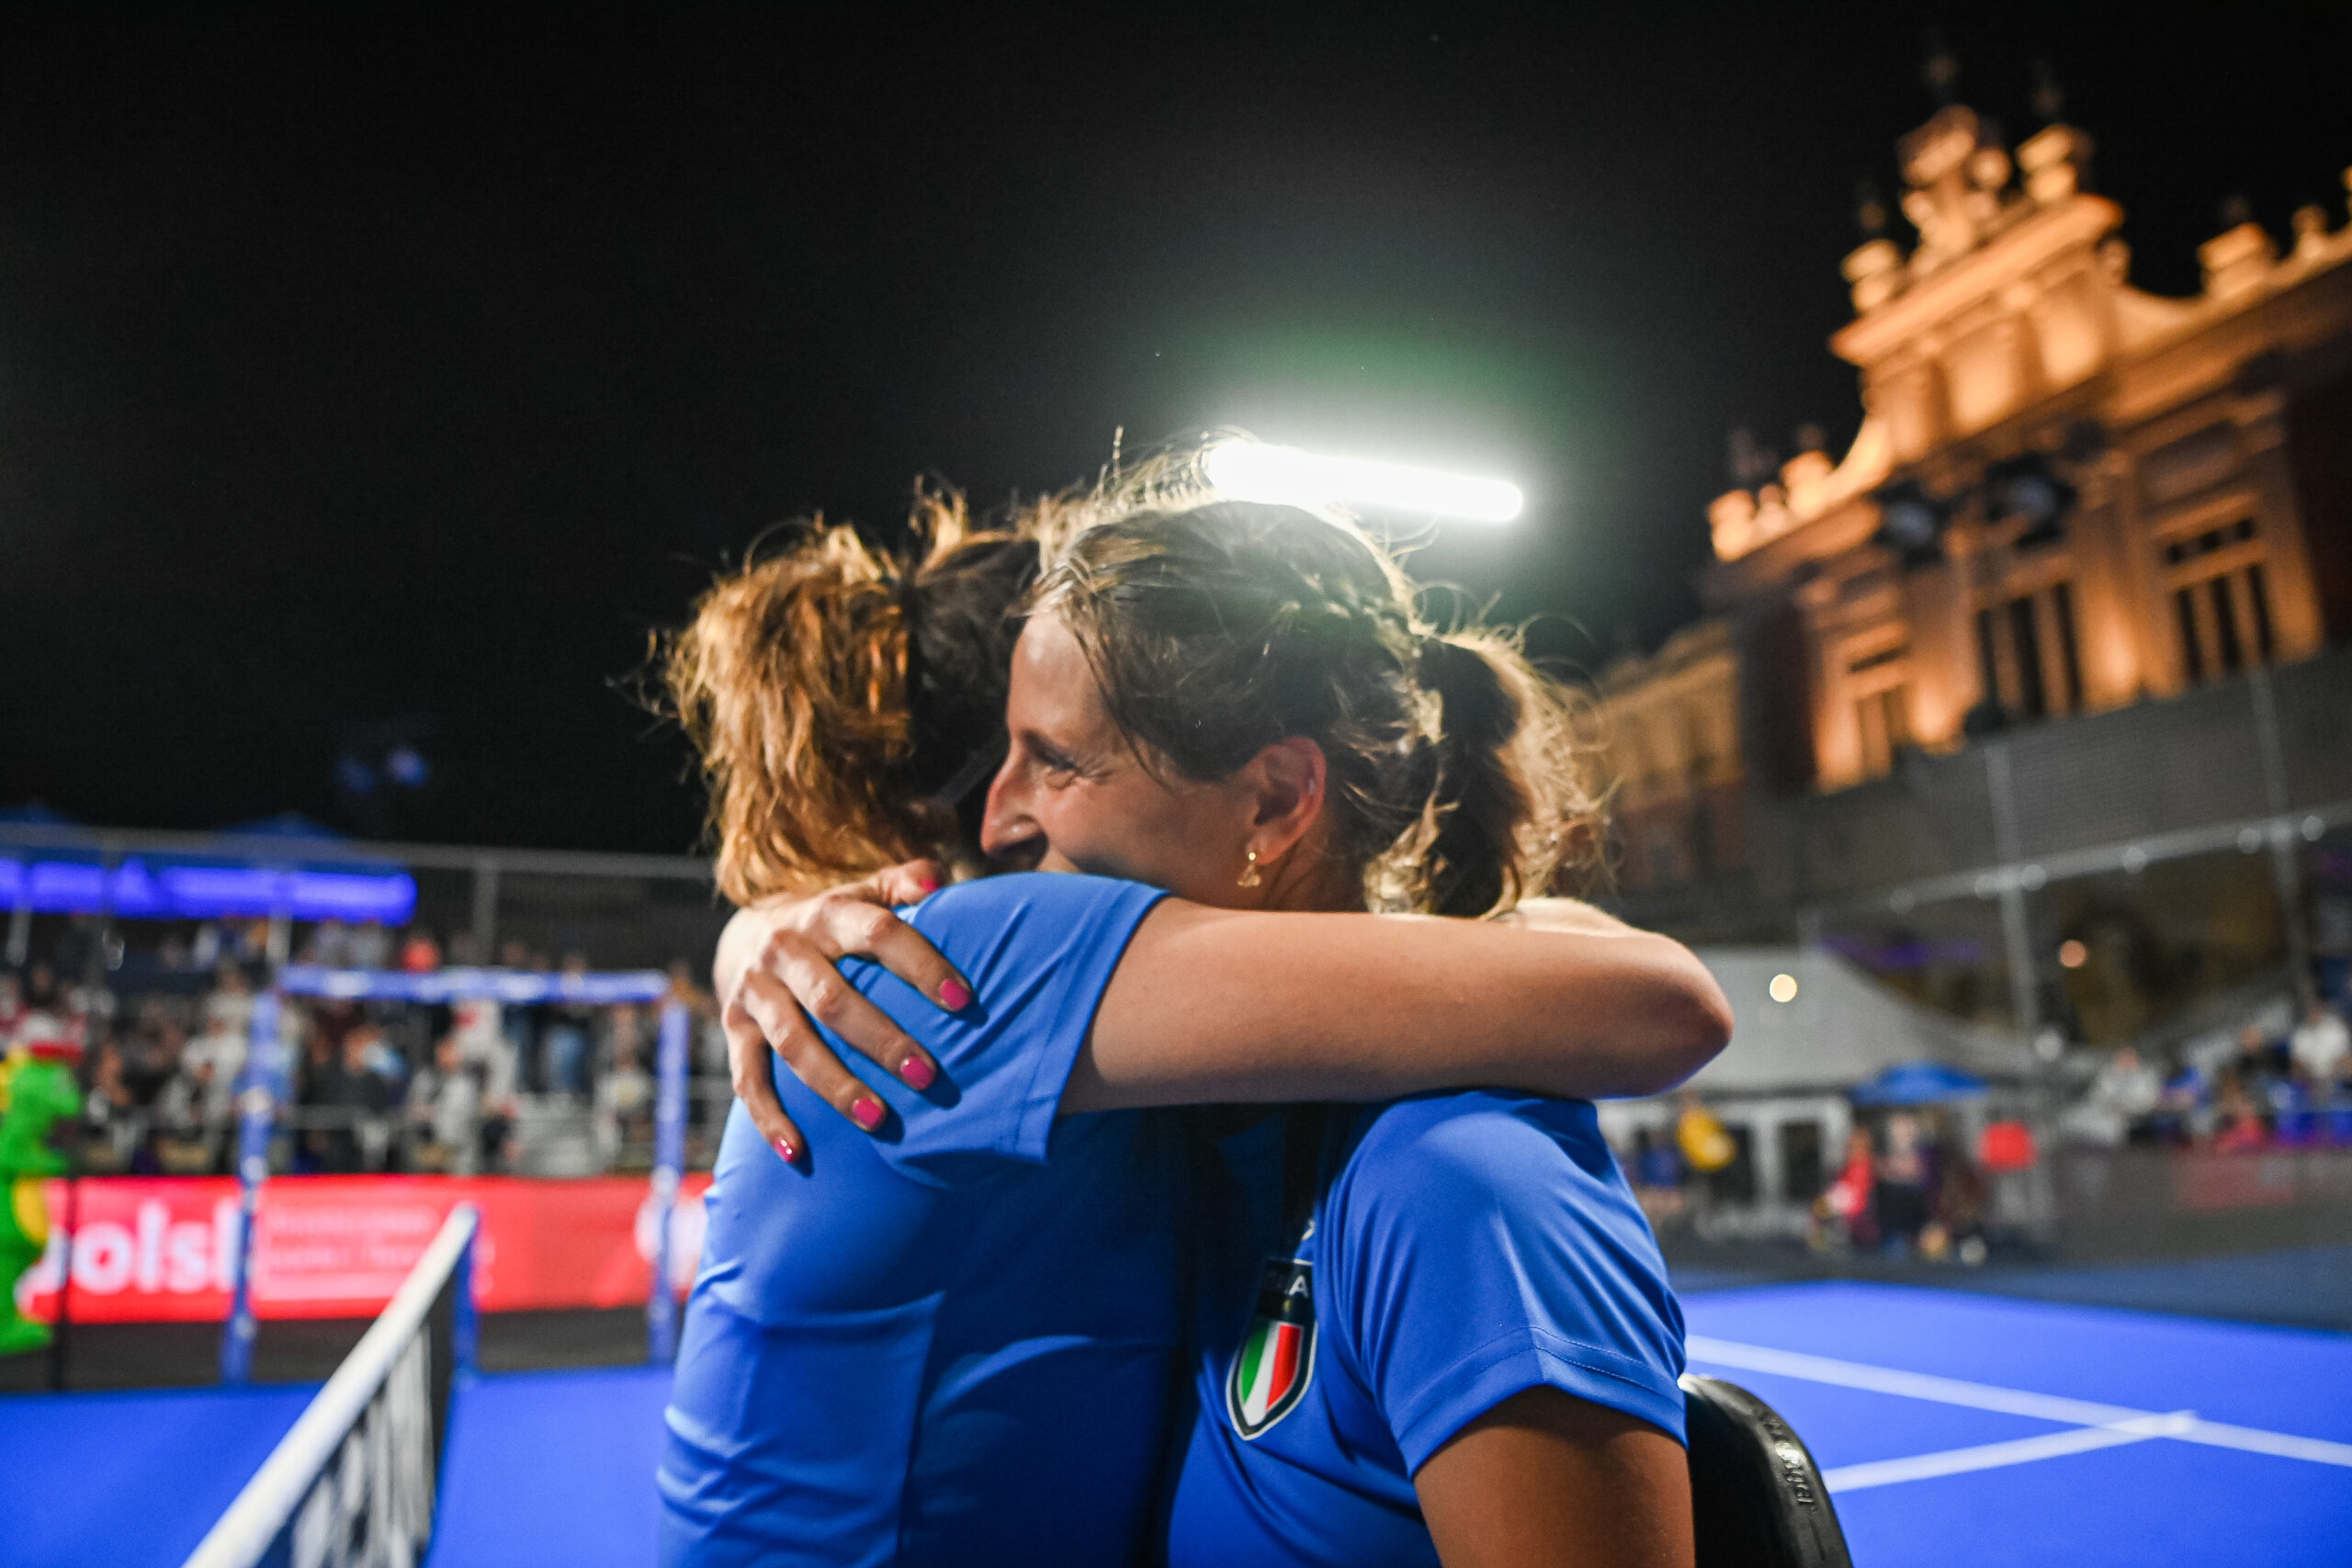 European Games – L'Italia vince l'oro con Carolina Orsi/Giorgia Marchetti dopo 3 ore di gioco!